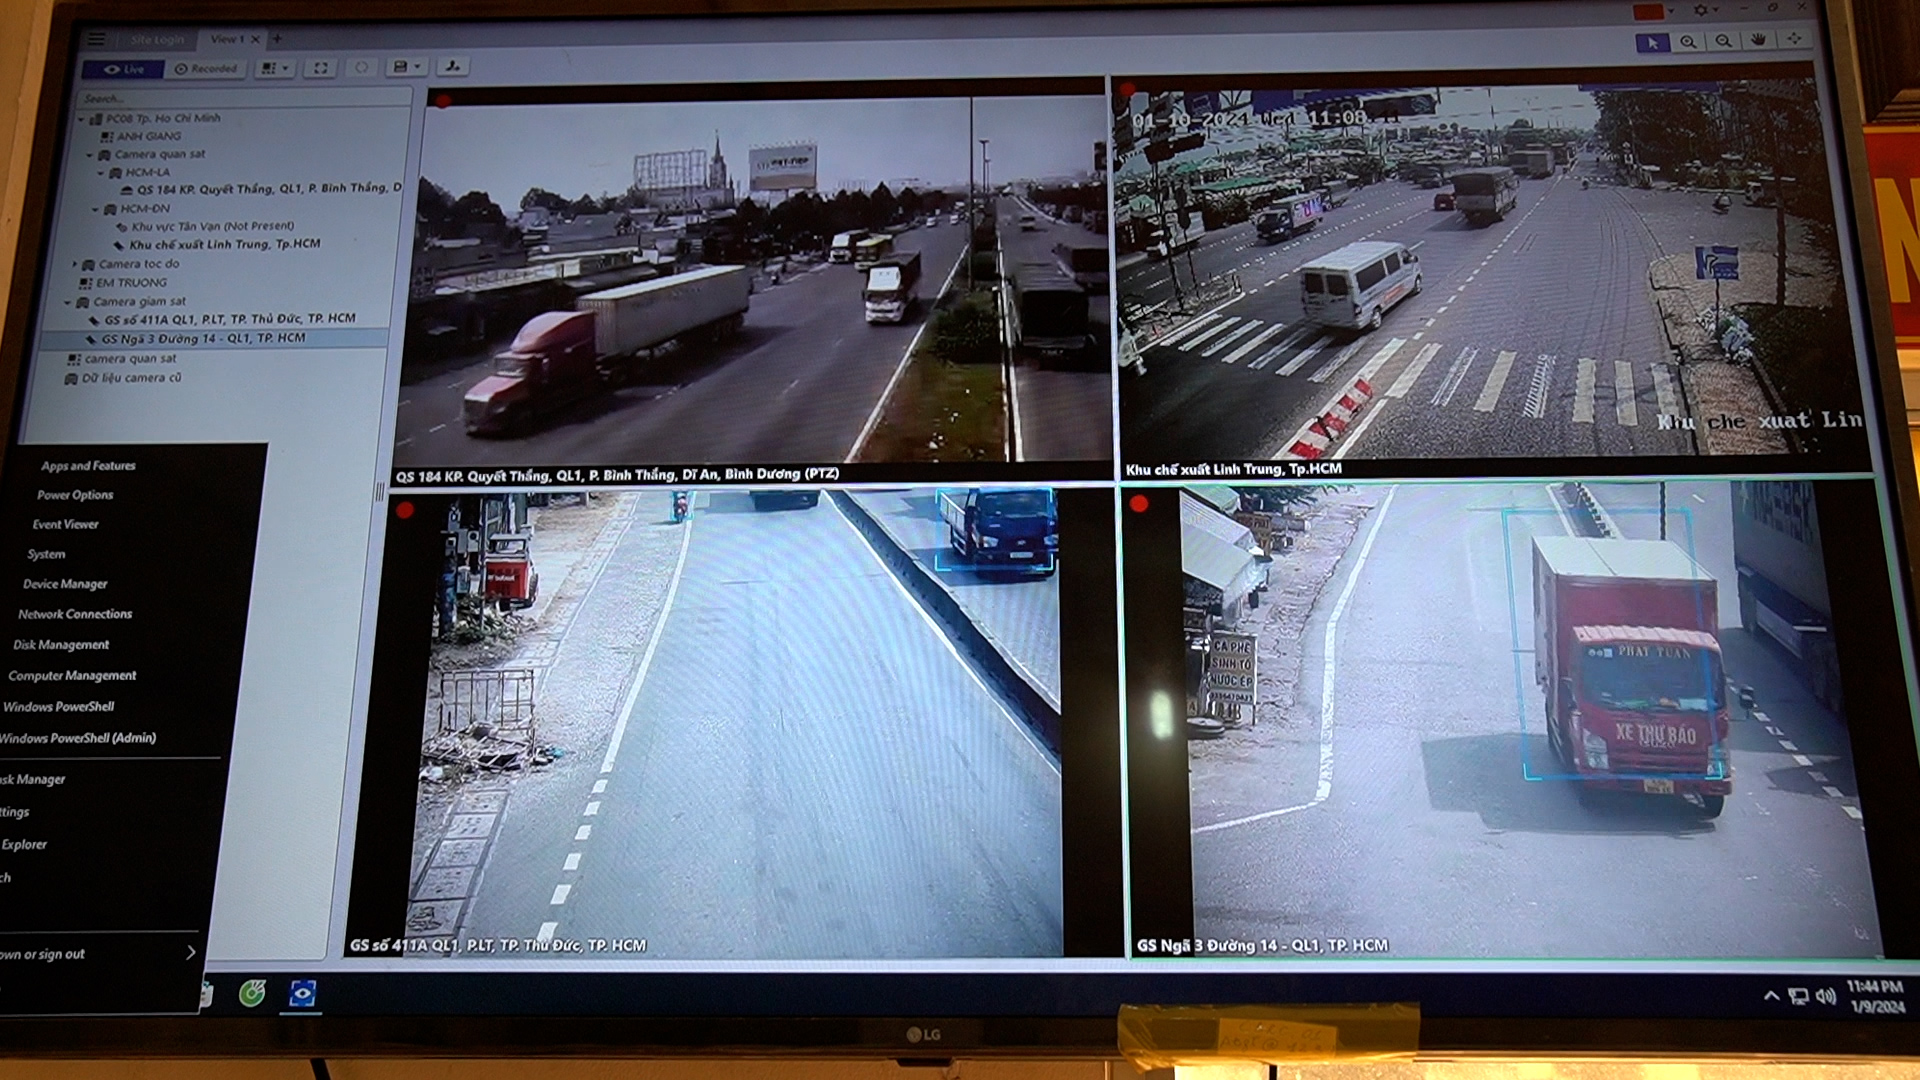 Thông qua hệ thống camera, lực lượng công an có thể phát hiện được tình hình giao thông, an ninh trật tự và ùn tắc giao thông